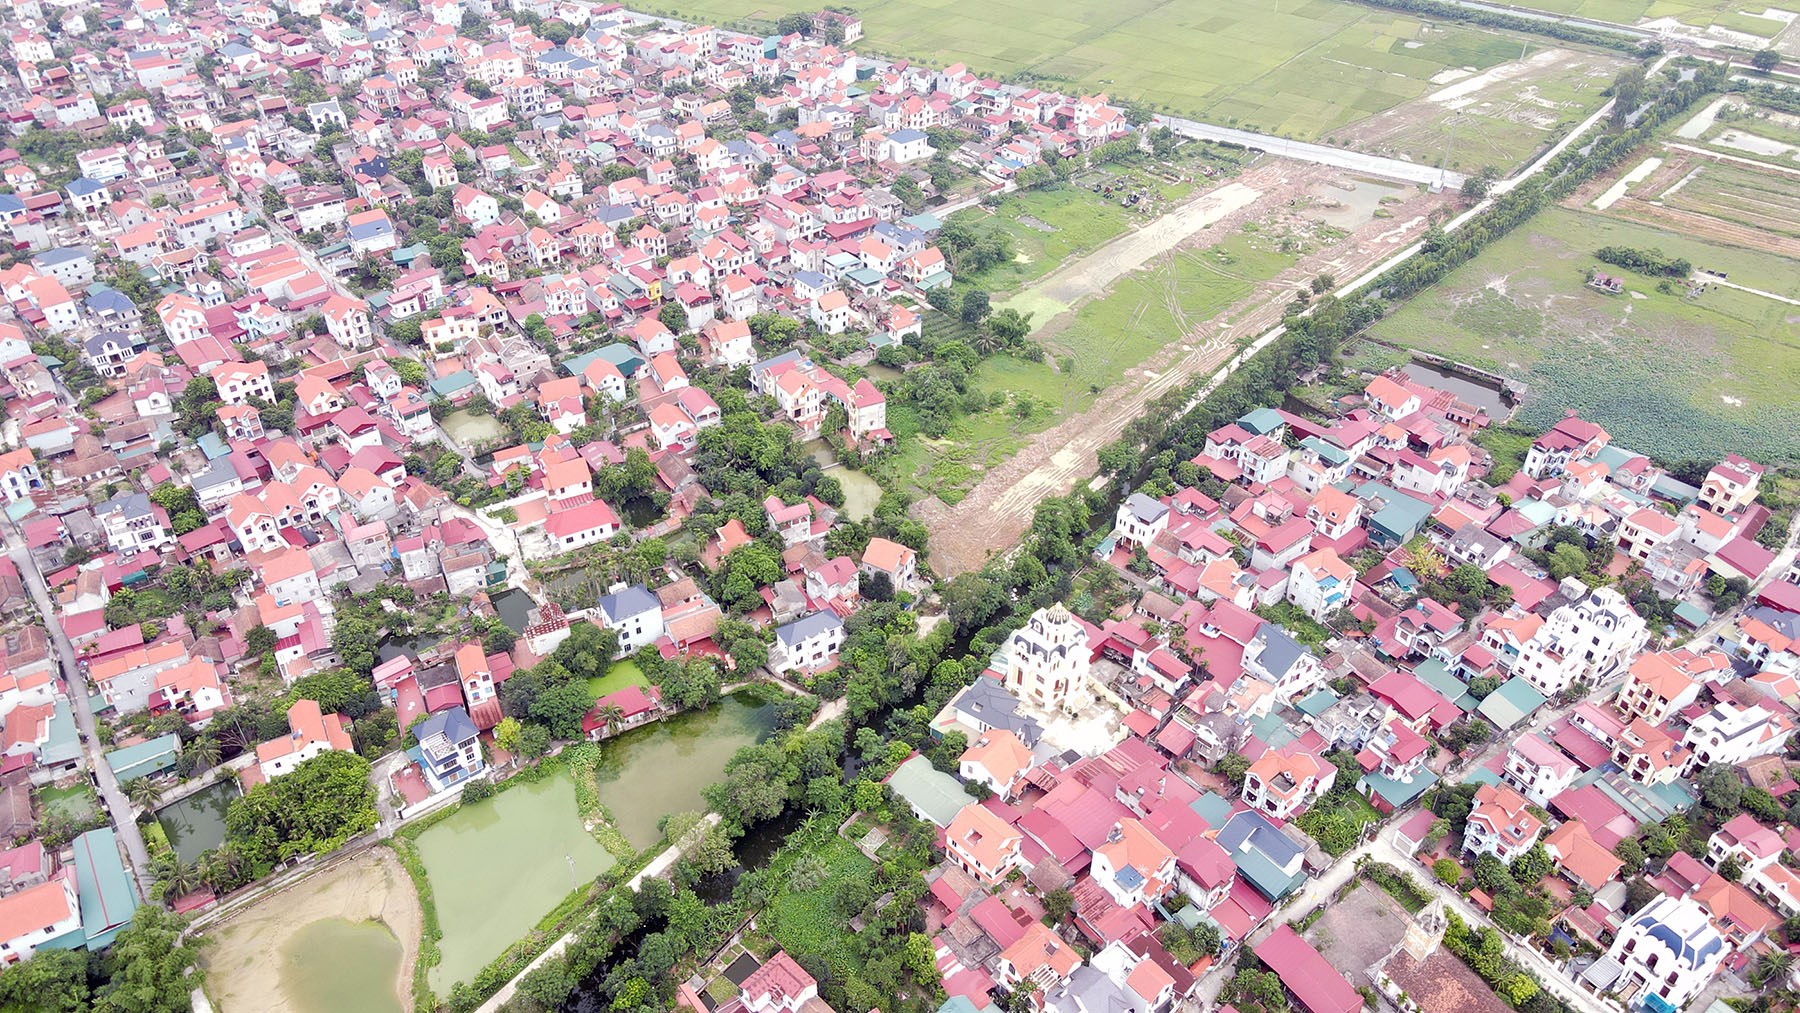 Toàn cảnh Vành đai 4 đang xây dựng qua thị xã Thuận Thành và huyện Gia Bình, Bắc Ninh